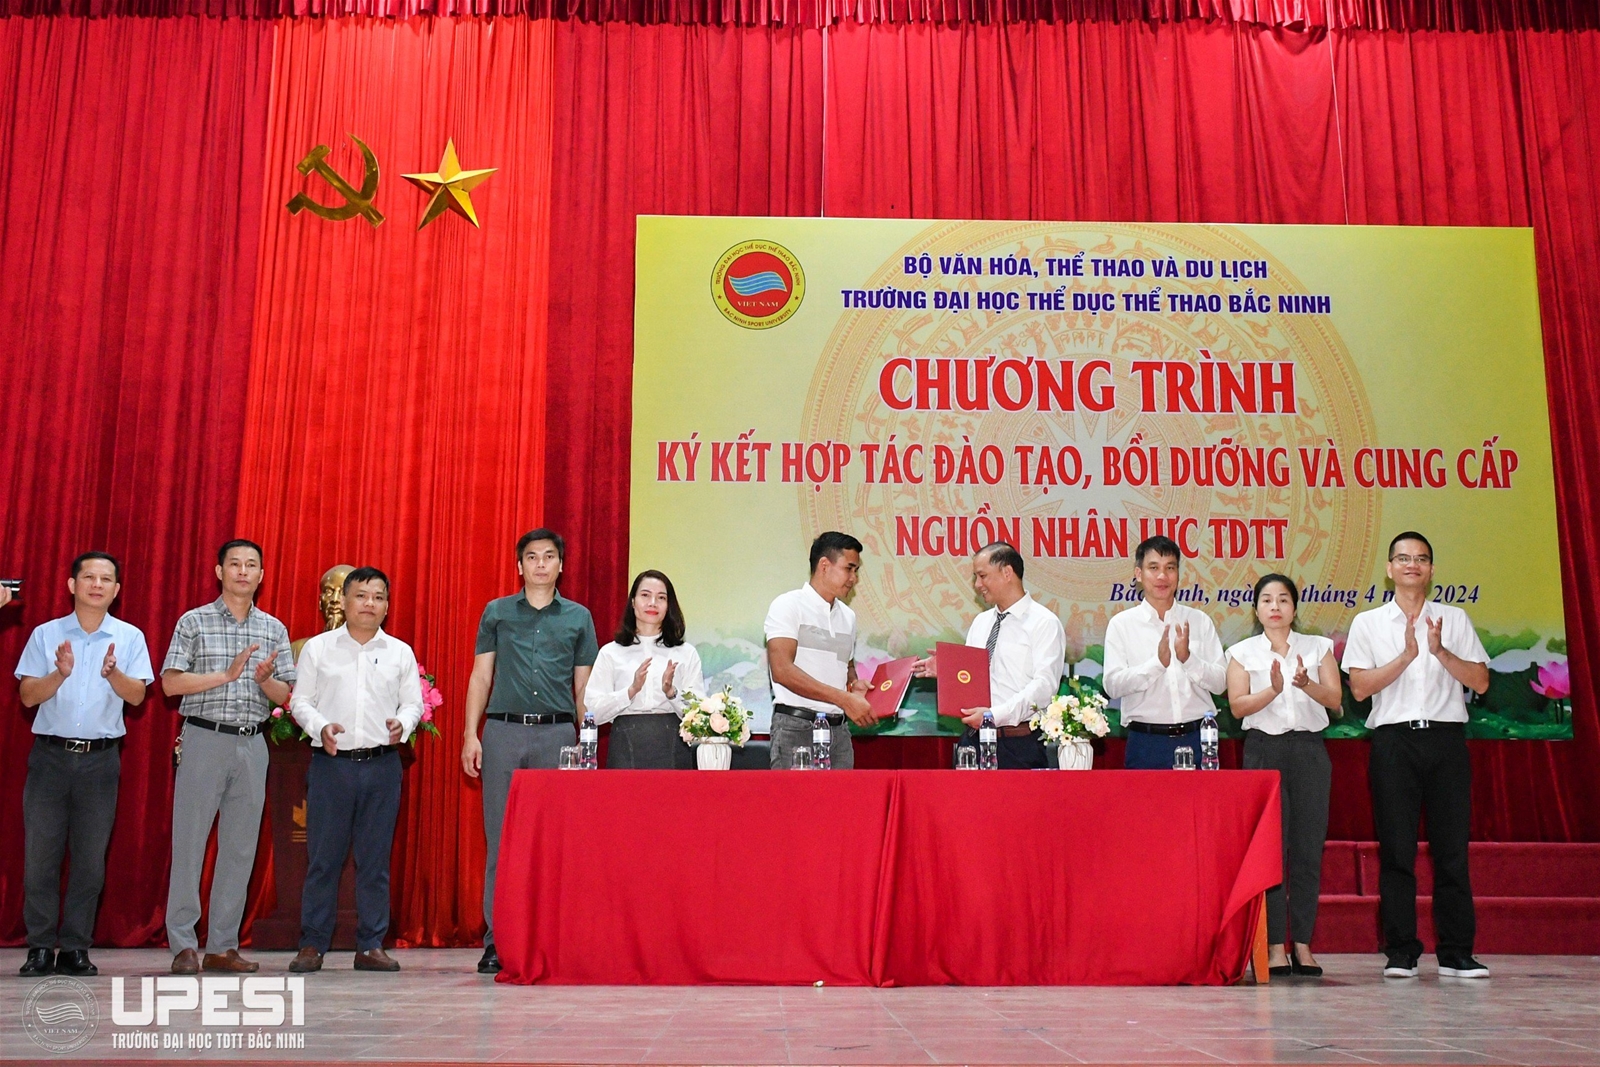 Chương trình ký kết hợp tác đào tạo, bồi dưỡng và cung cấp nguồn nhân lực TDTT tại Trường Đại học TDTT Bắc Ninh năm 2024 - Ảnh 5.